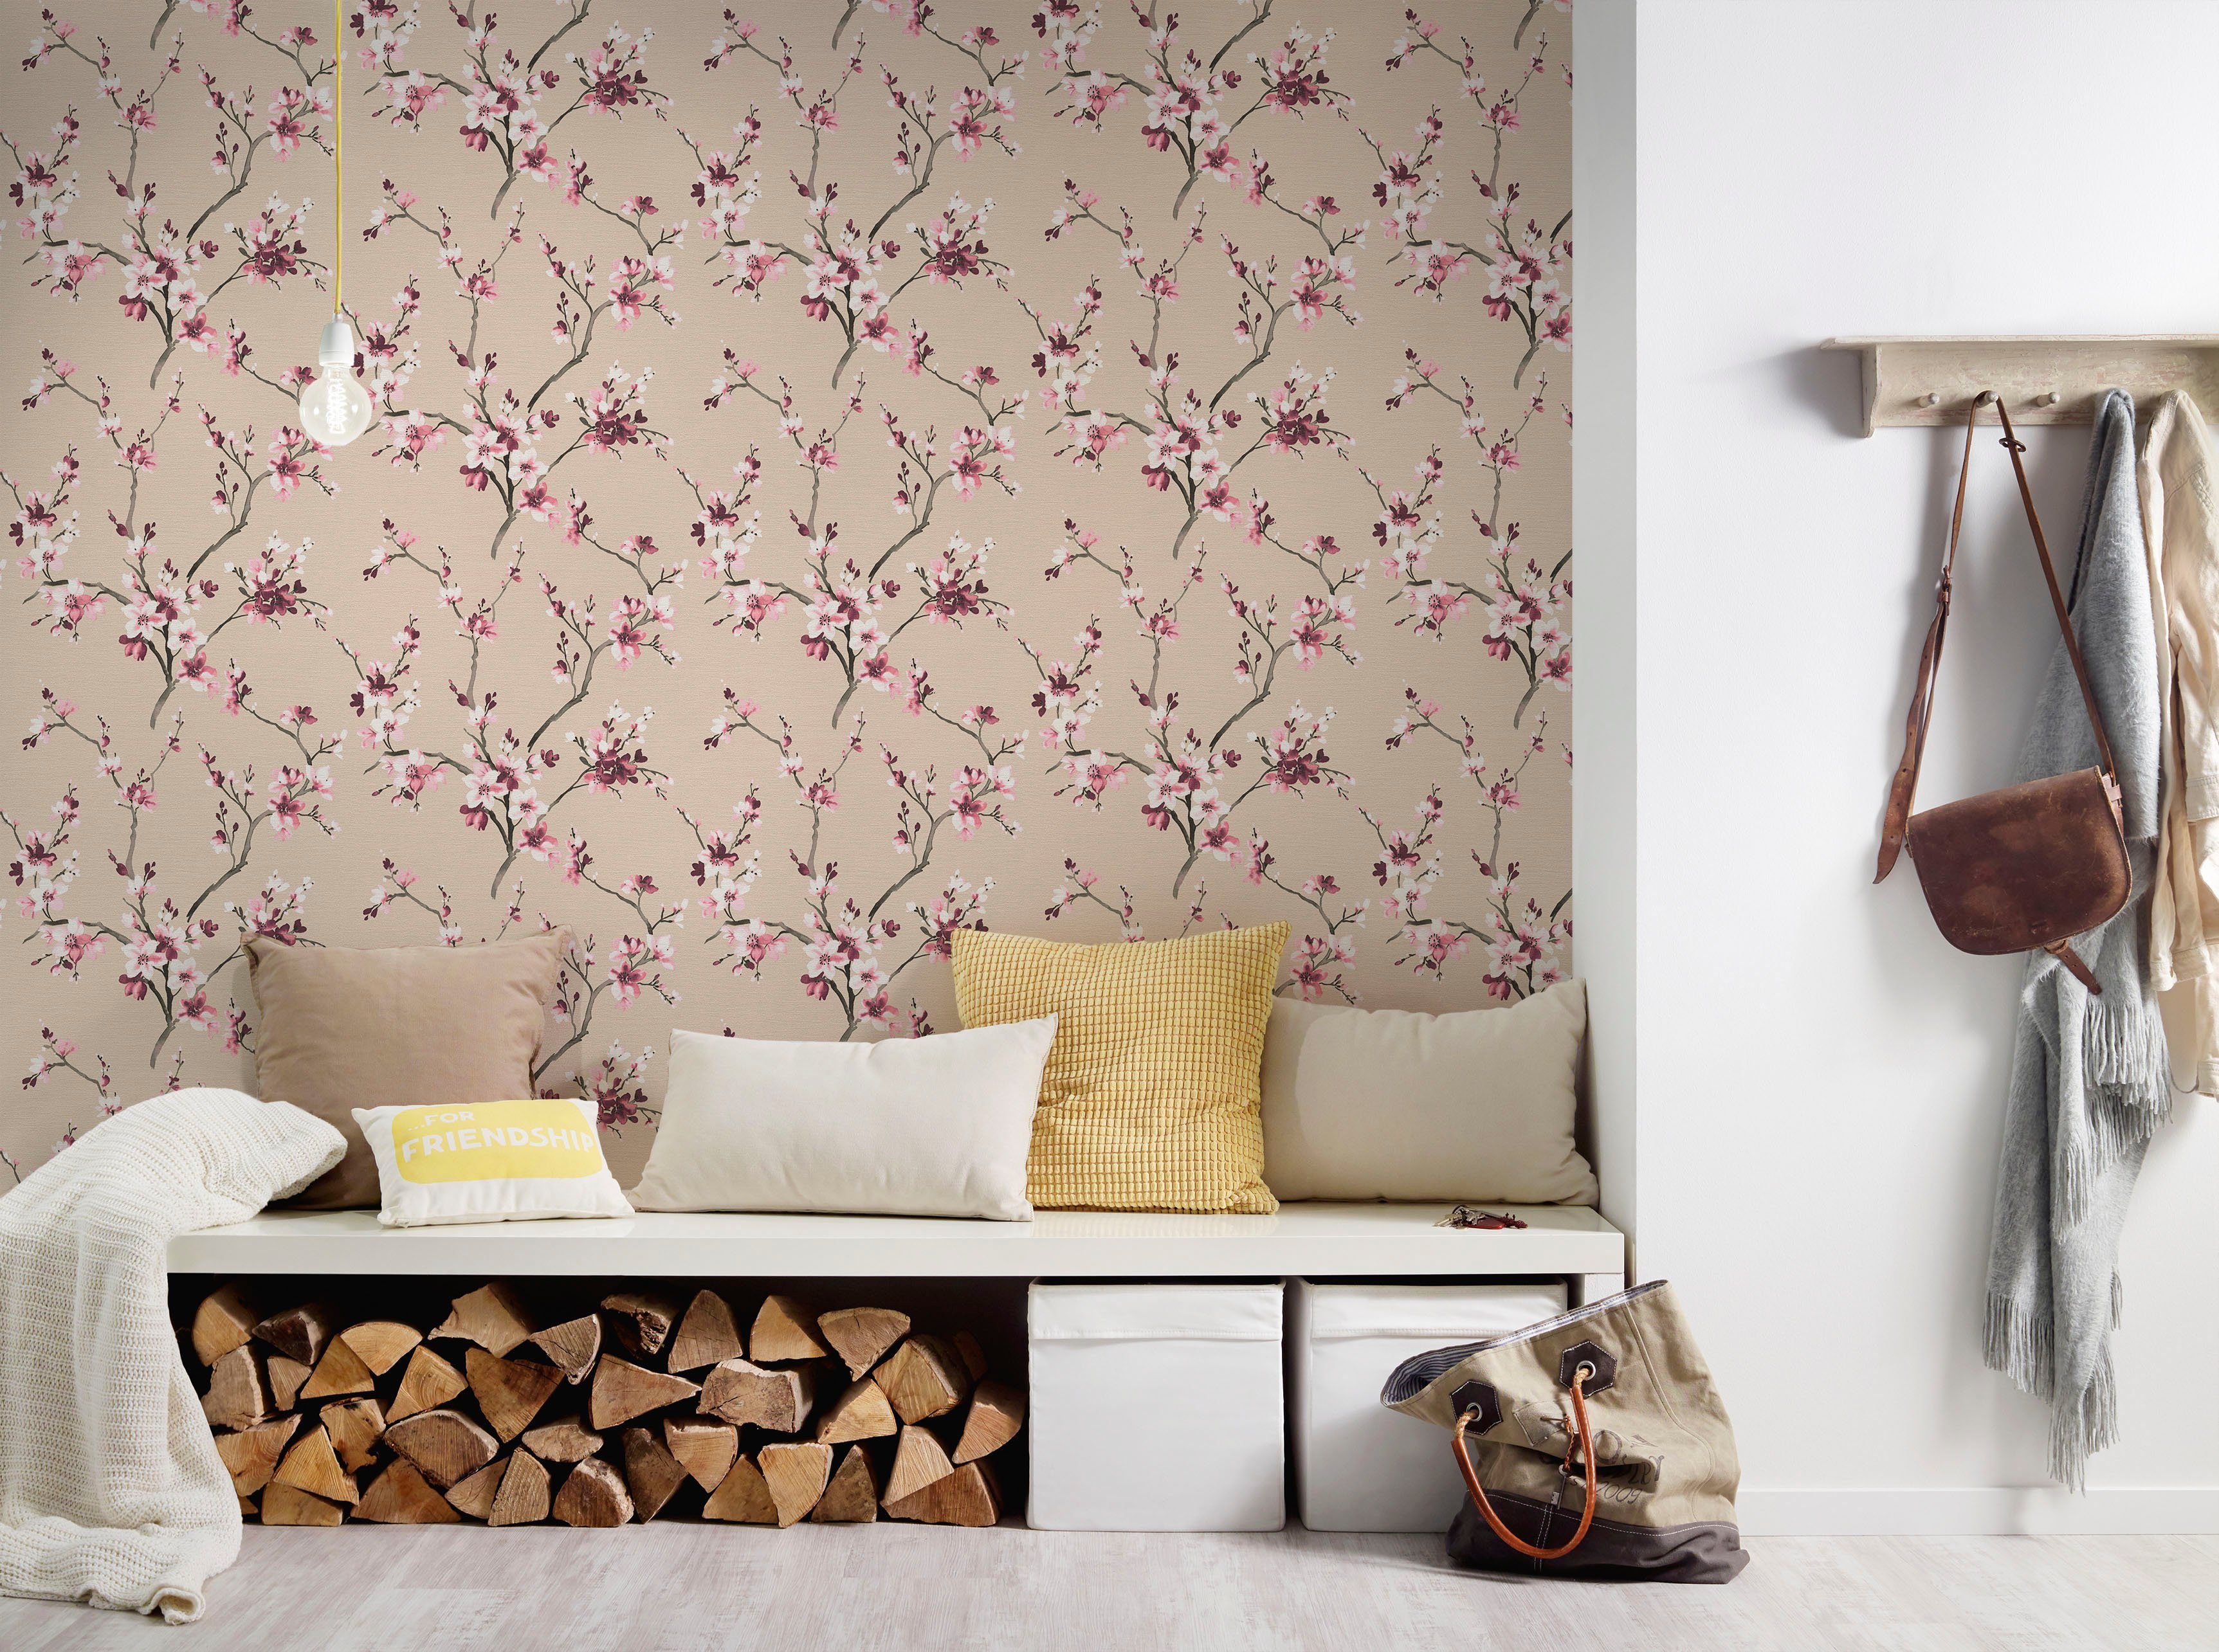 living floral, Lodge, Blumenoptik walls Tapete natürlich, geblümt, strukturiert, rosa/beige Vliestapete Desert